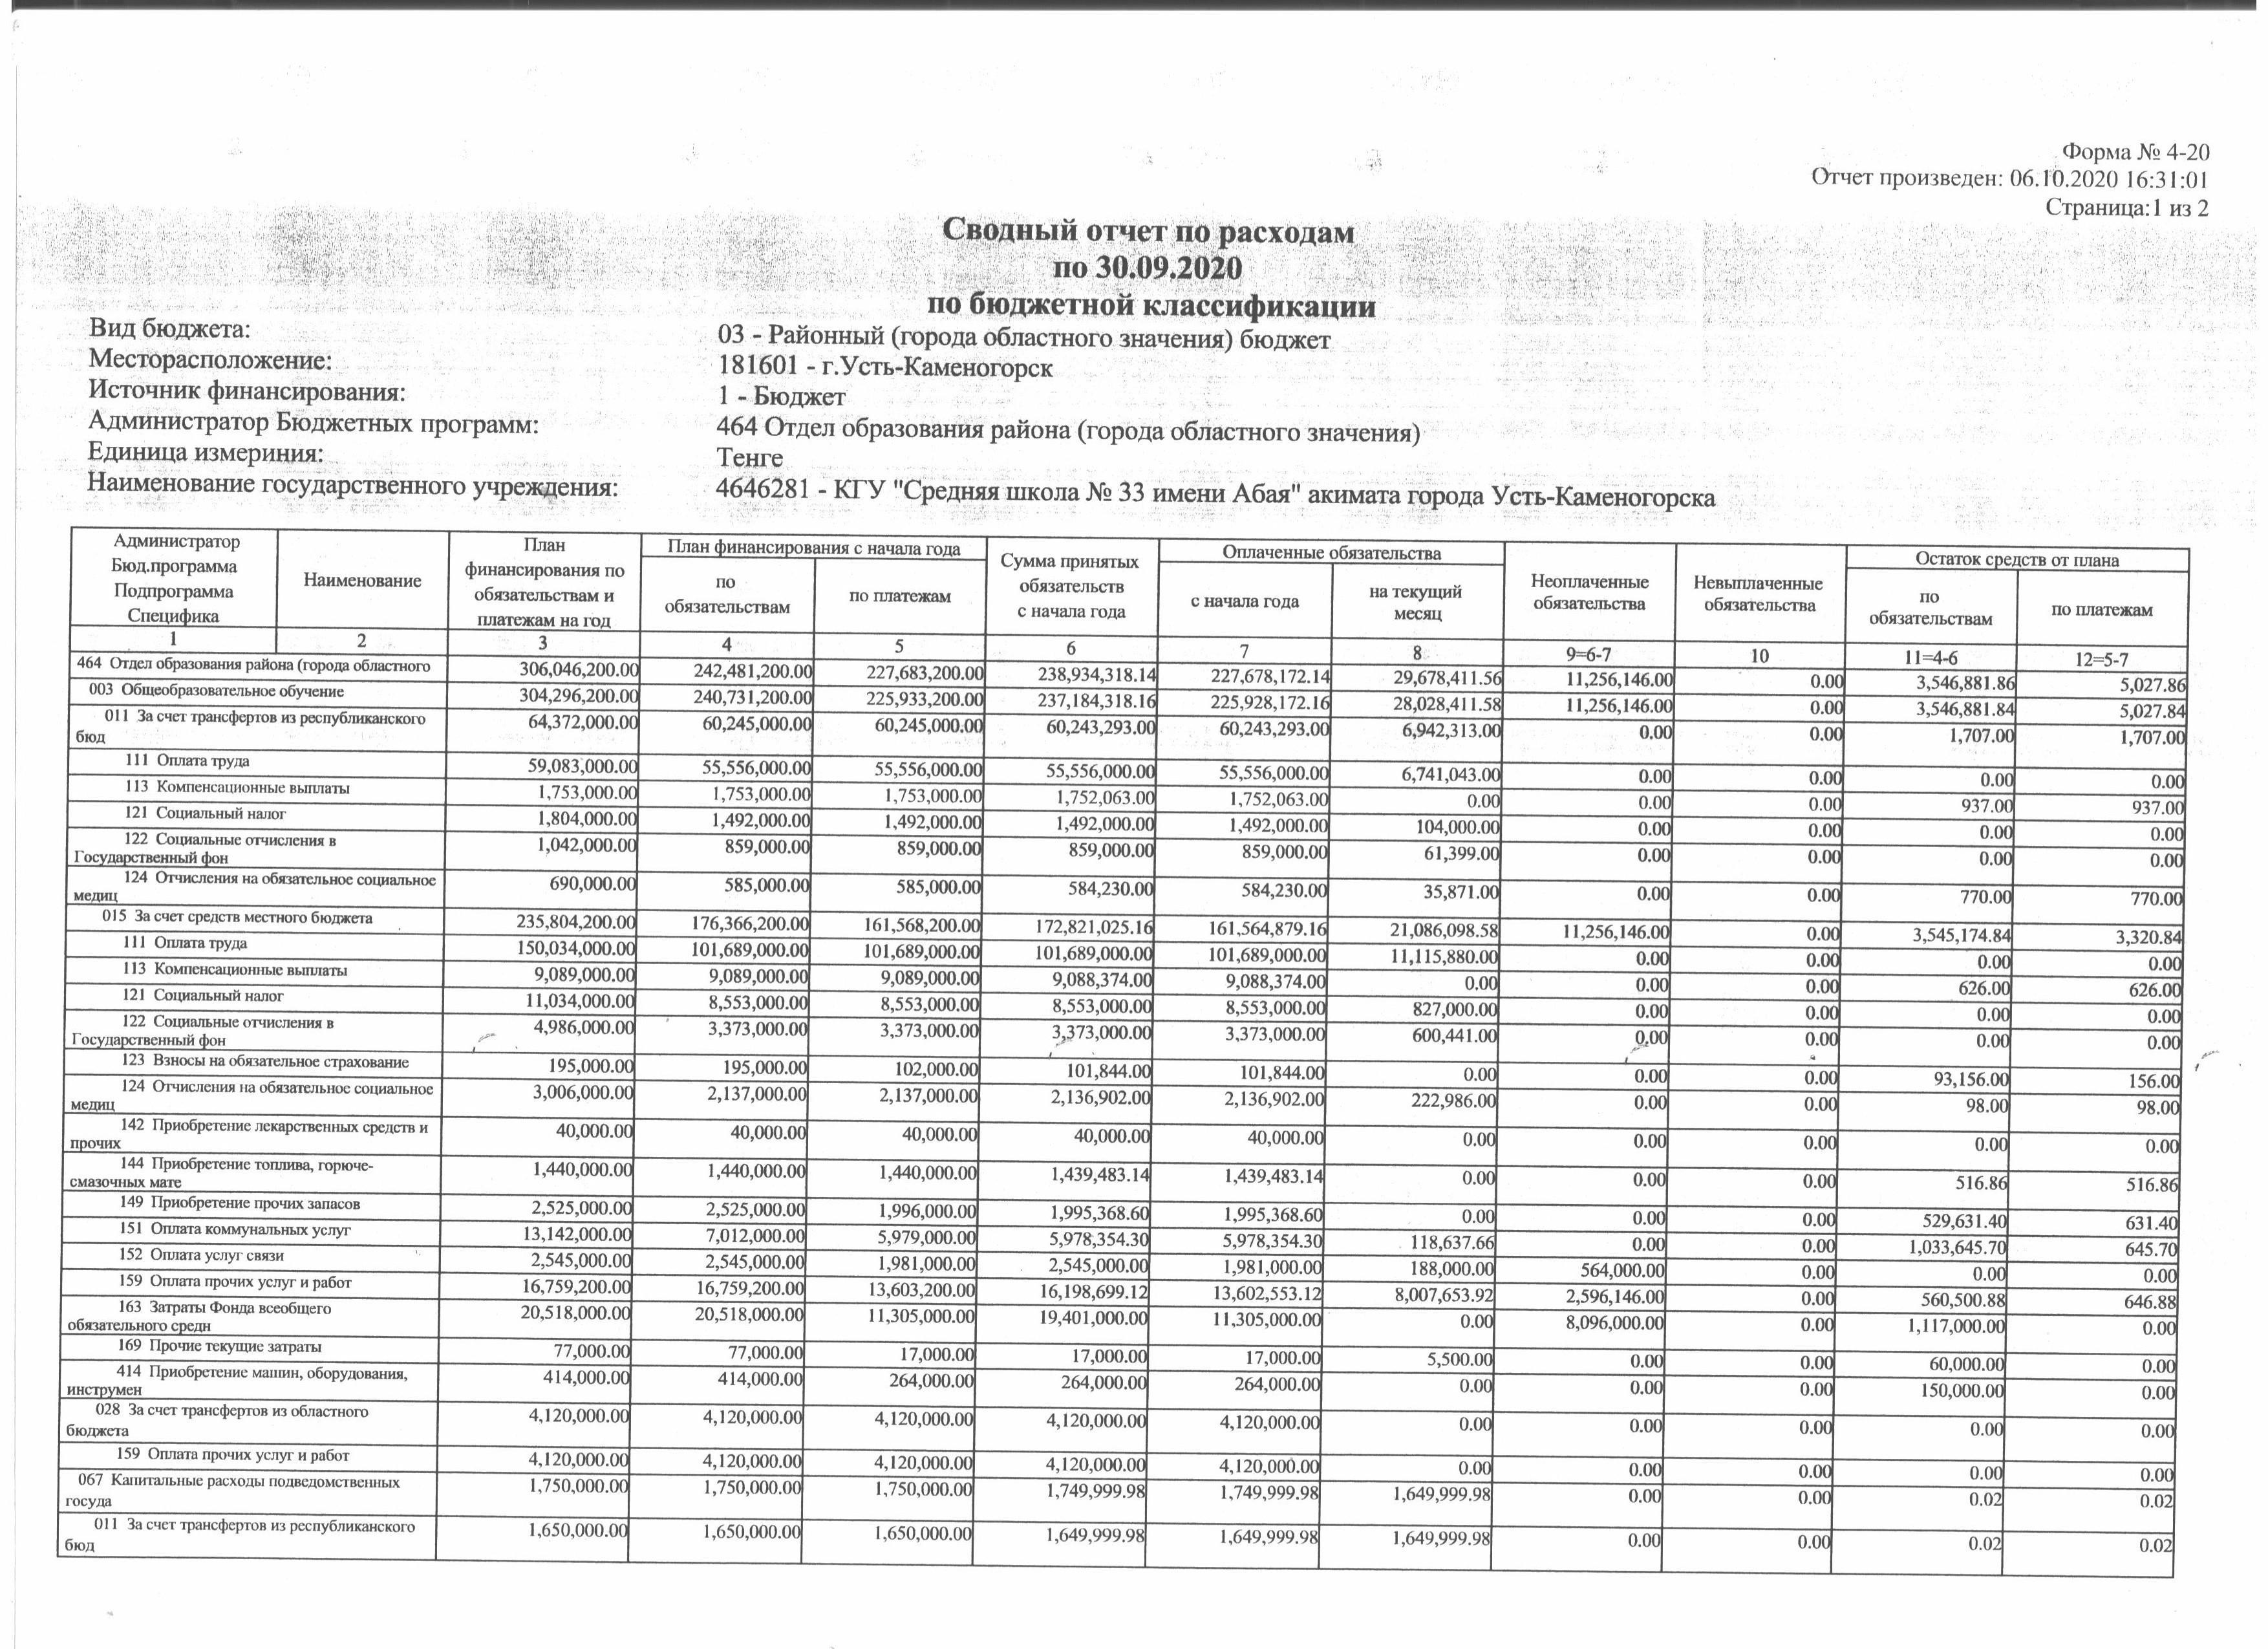 Сводный отчет по расходам по 30.09.2020 по бюжетной классификации